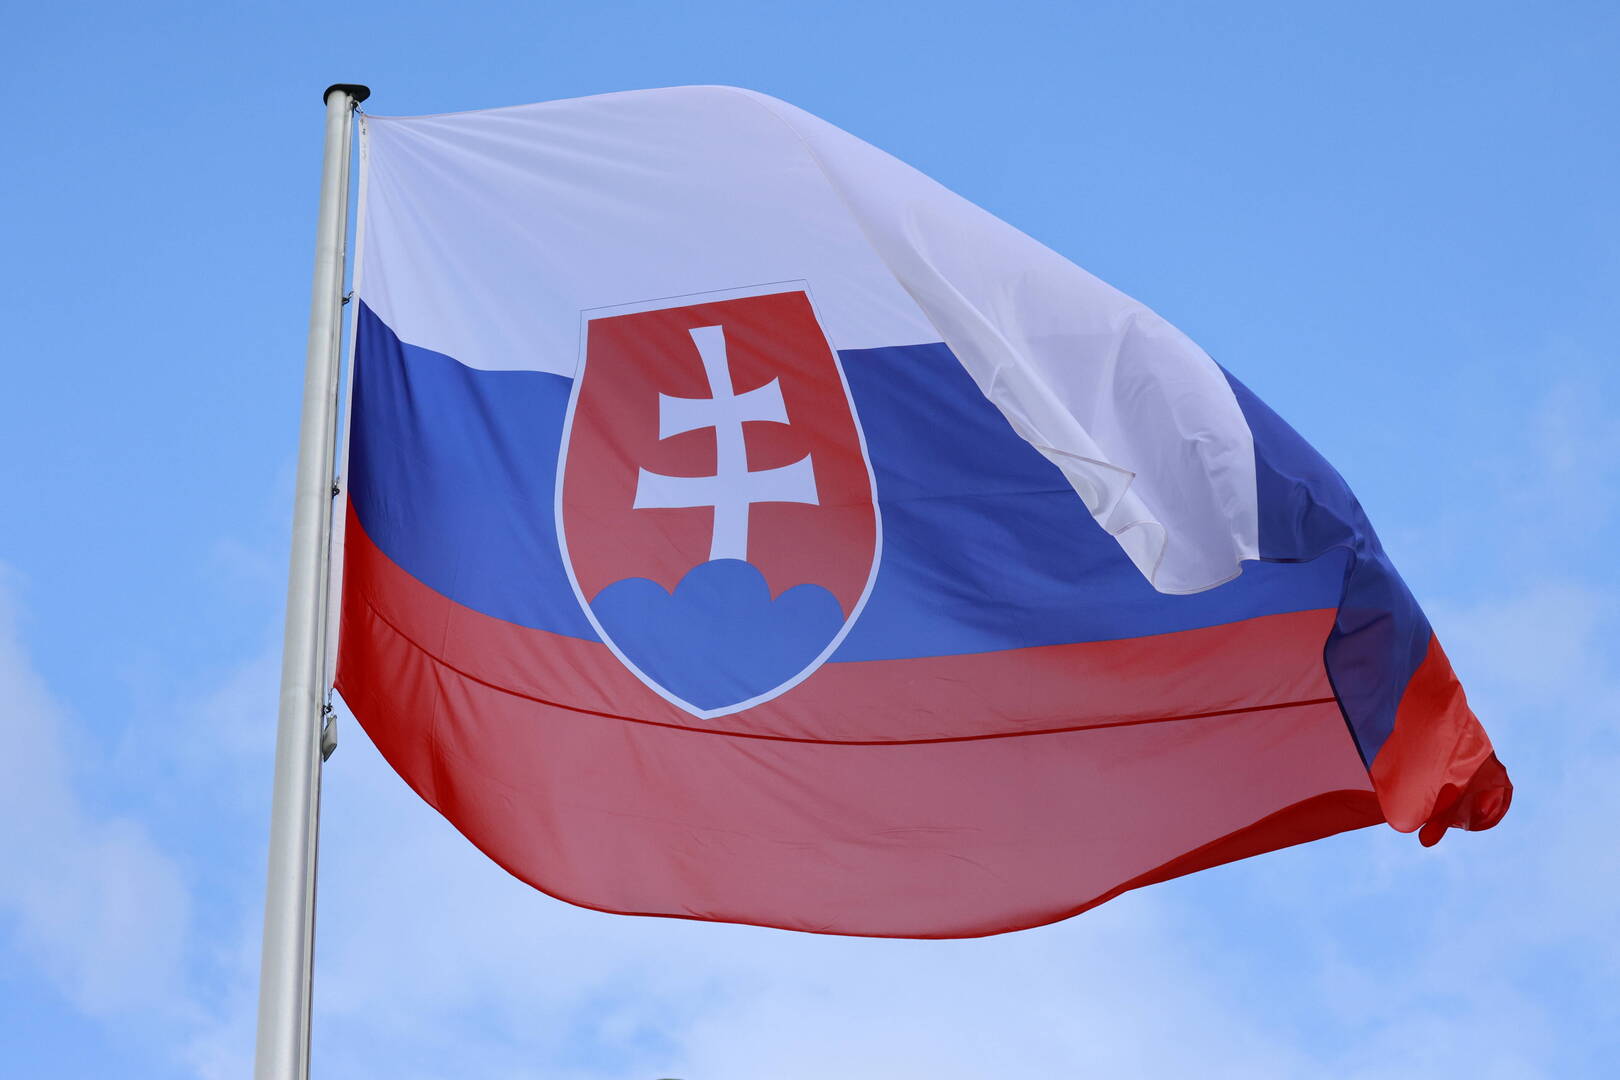 فوز حزب روبرت فيكو المؤيد لروسيا في انتخابات سلوفاكيا